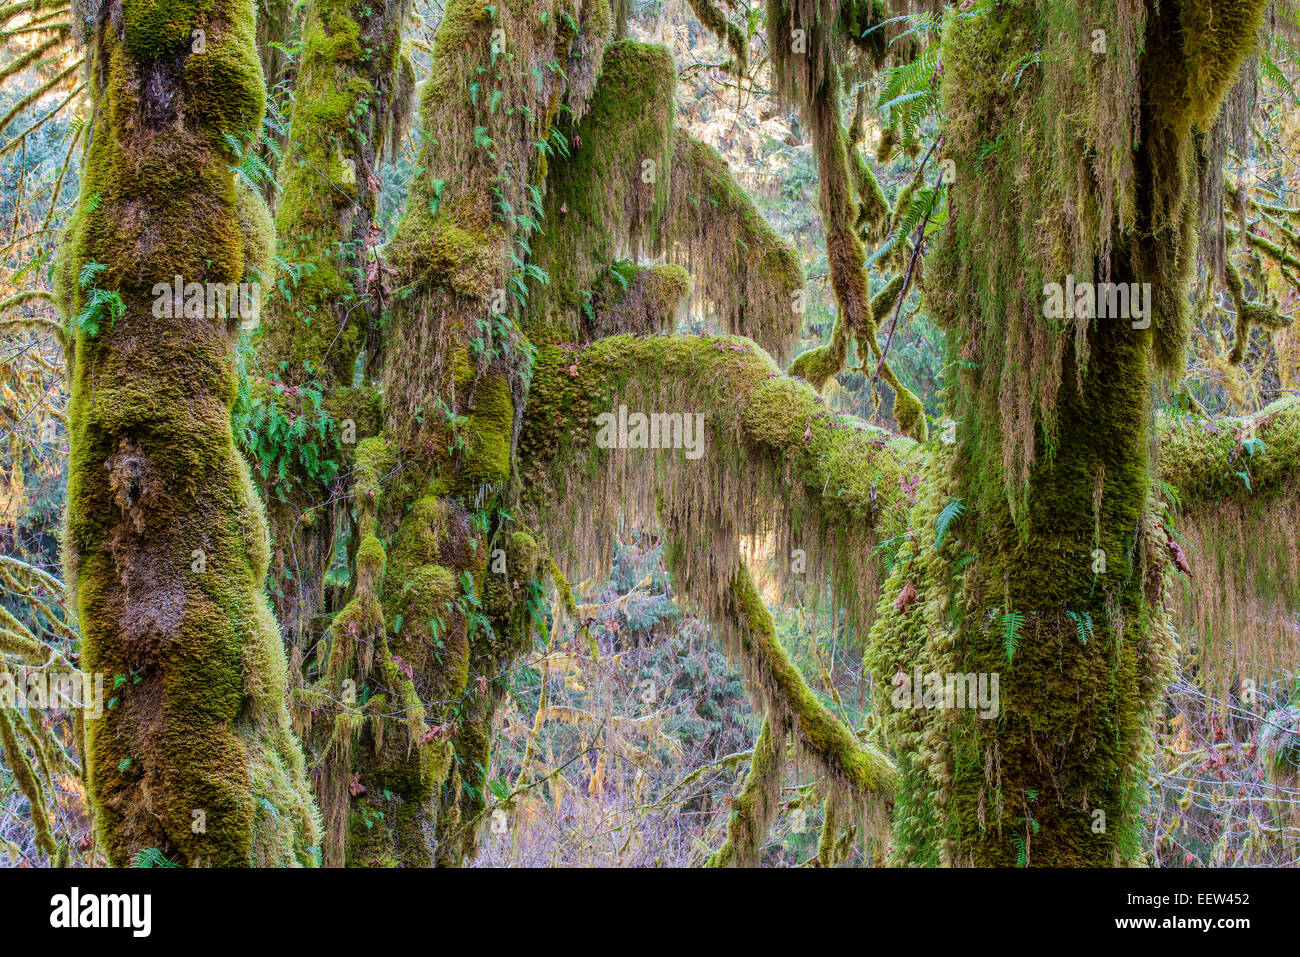 Bigleaf maple or Acer macrophyllum, Hoh rainforest, Olympic National Park, Washington, USA Stock Photo